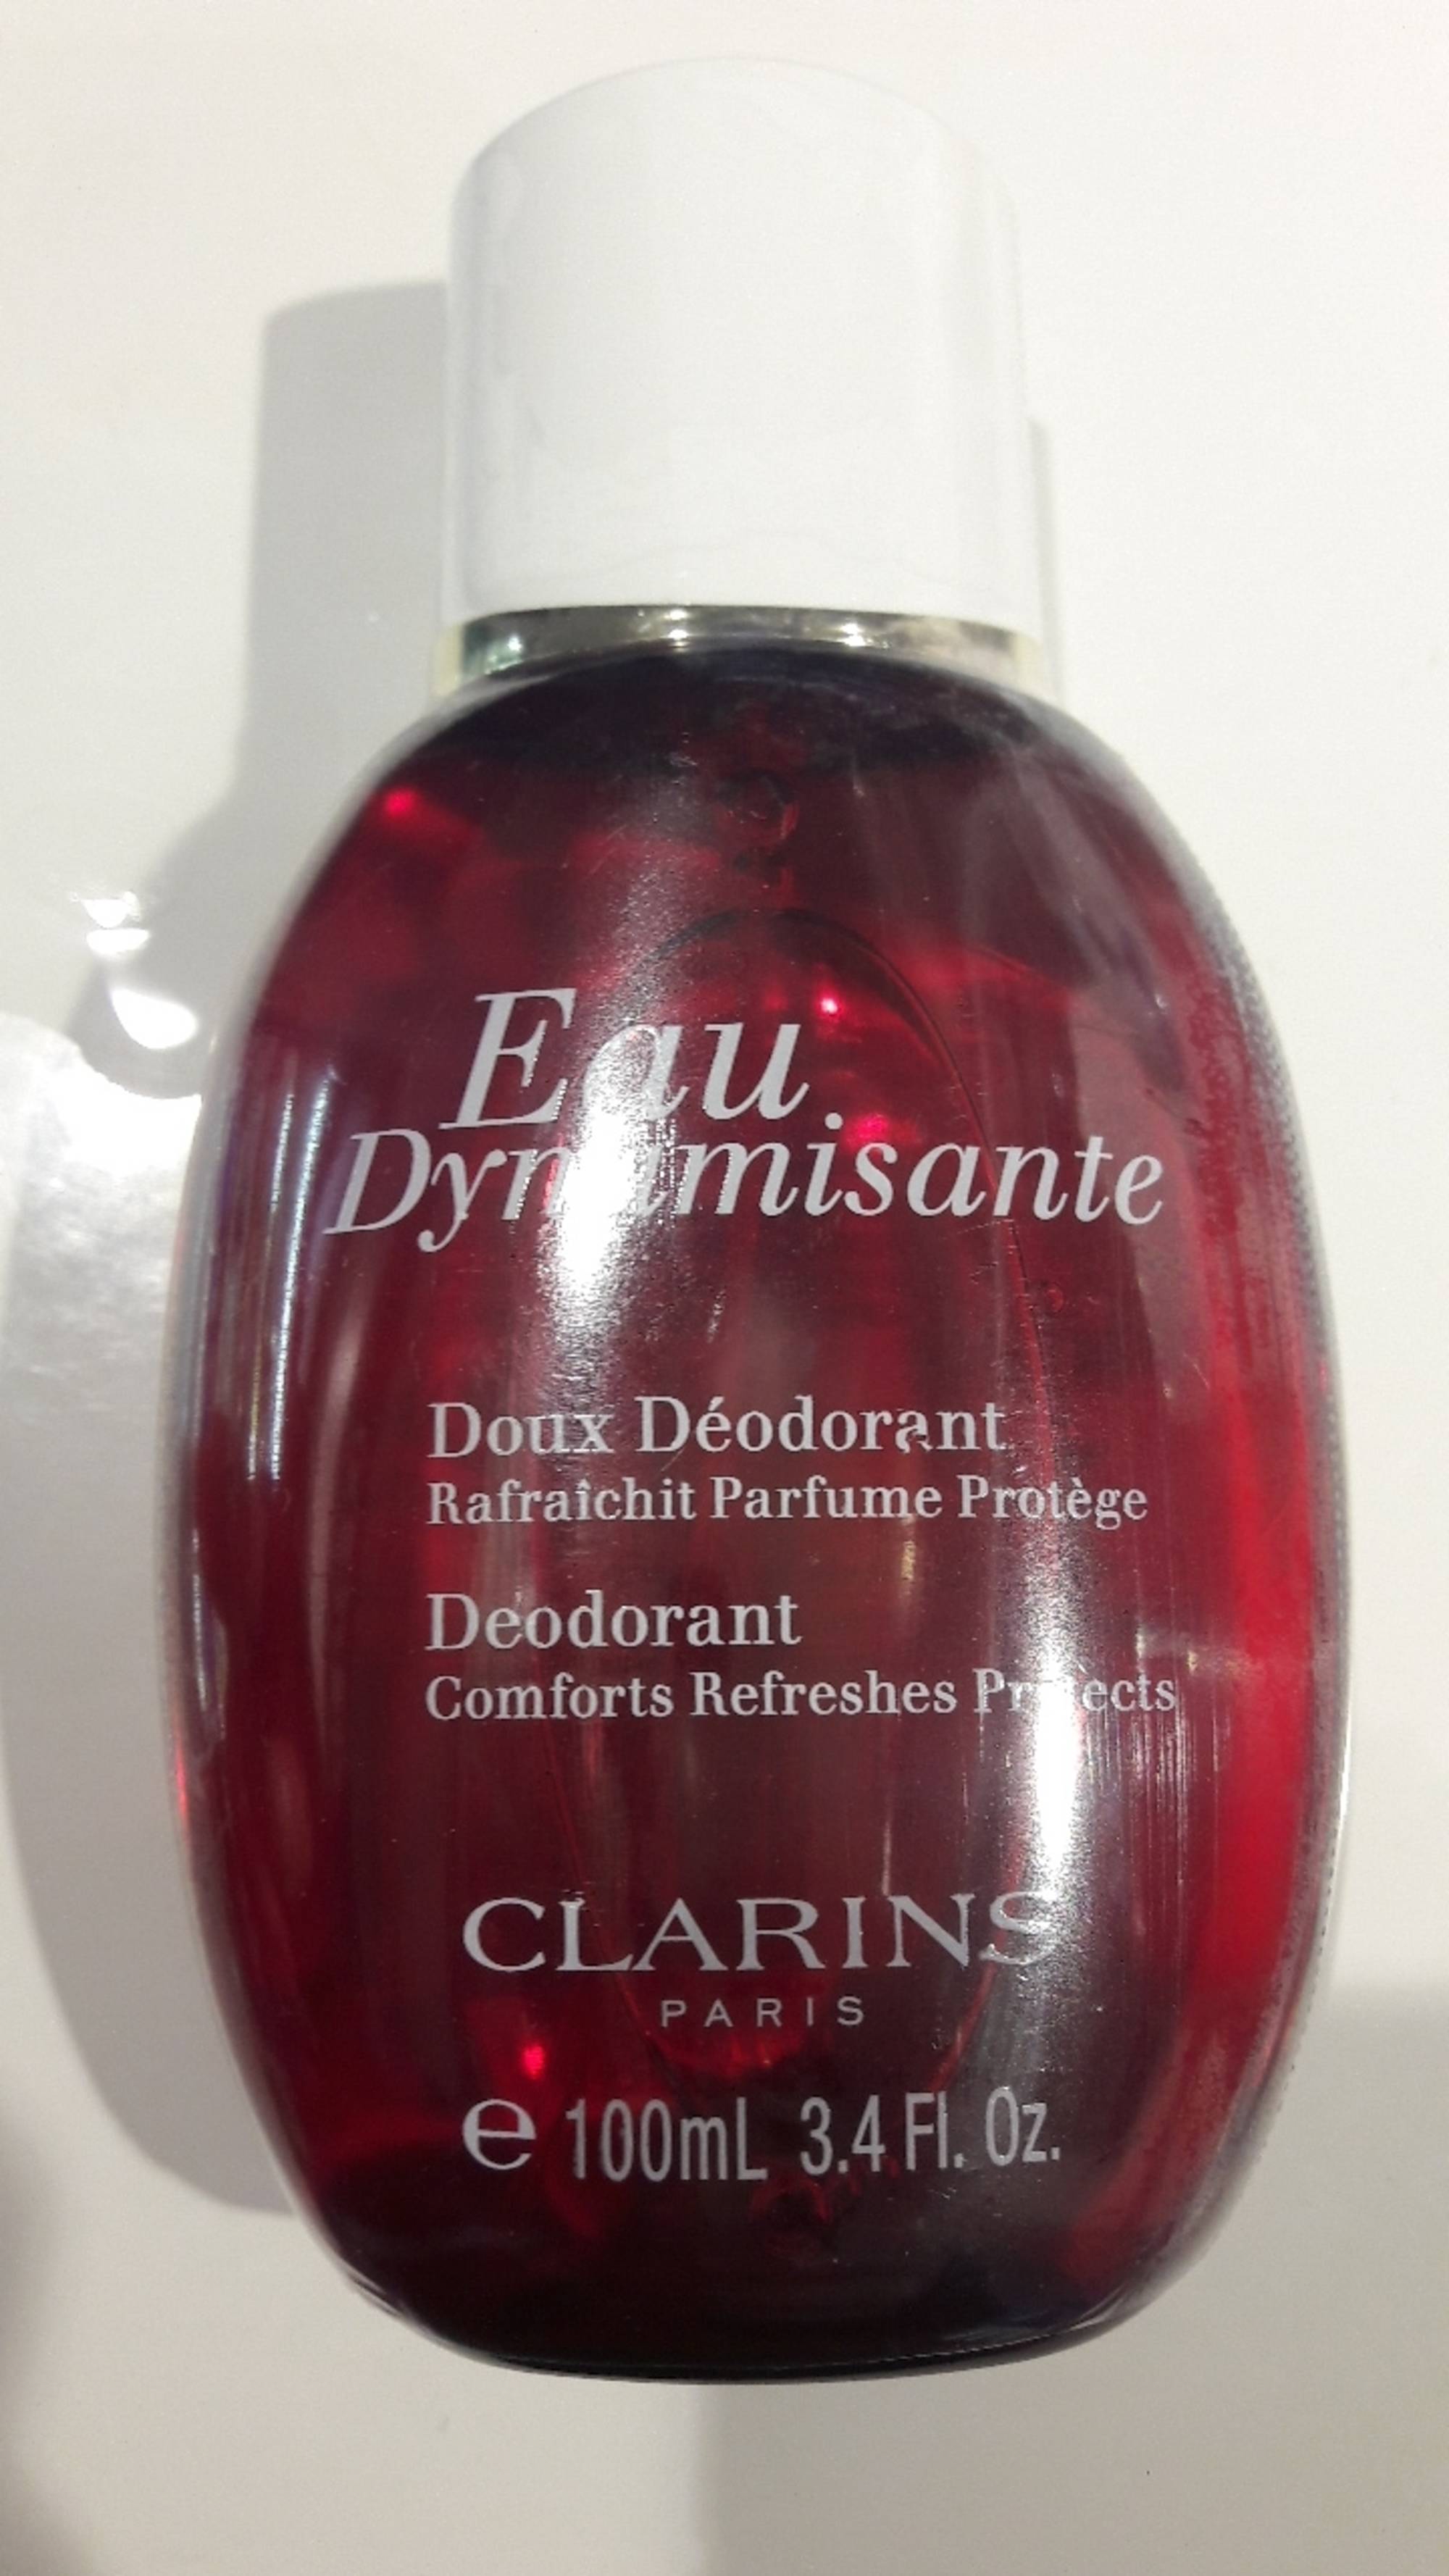 CLARINS - Eau dynamisante - Doux déodorant 